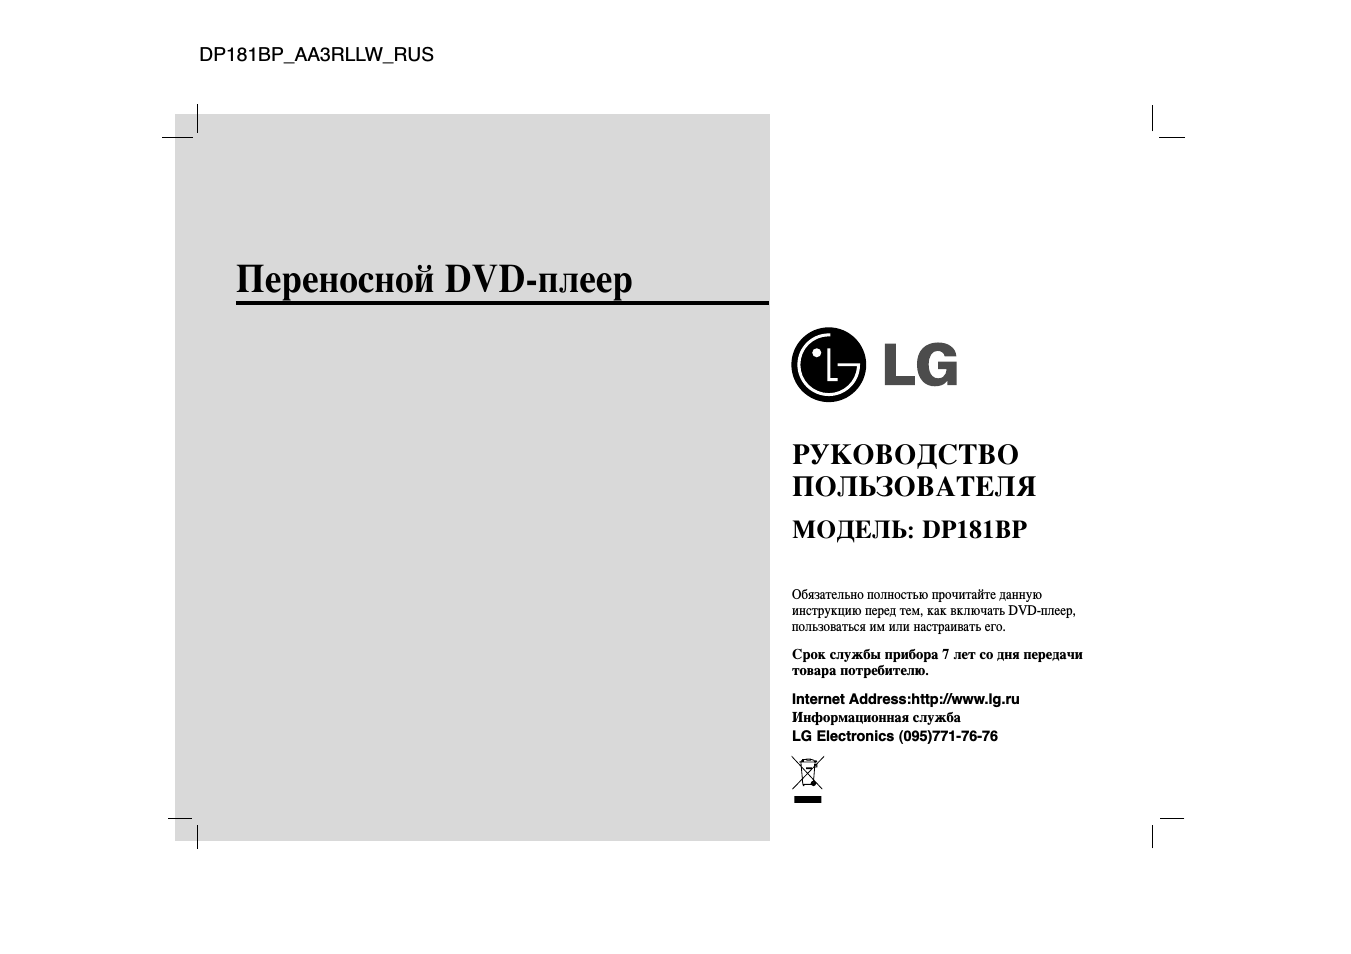 Инструкция по эксплуатации LG DP181BP | 41 cтраница